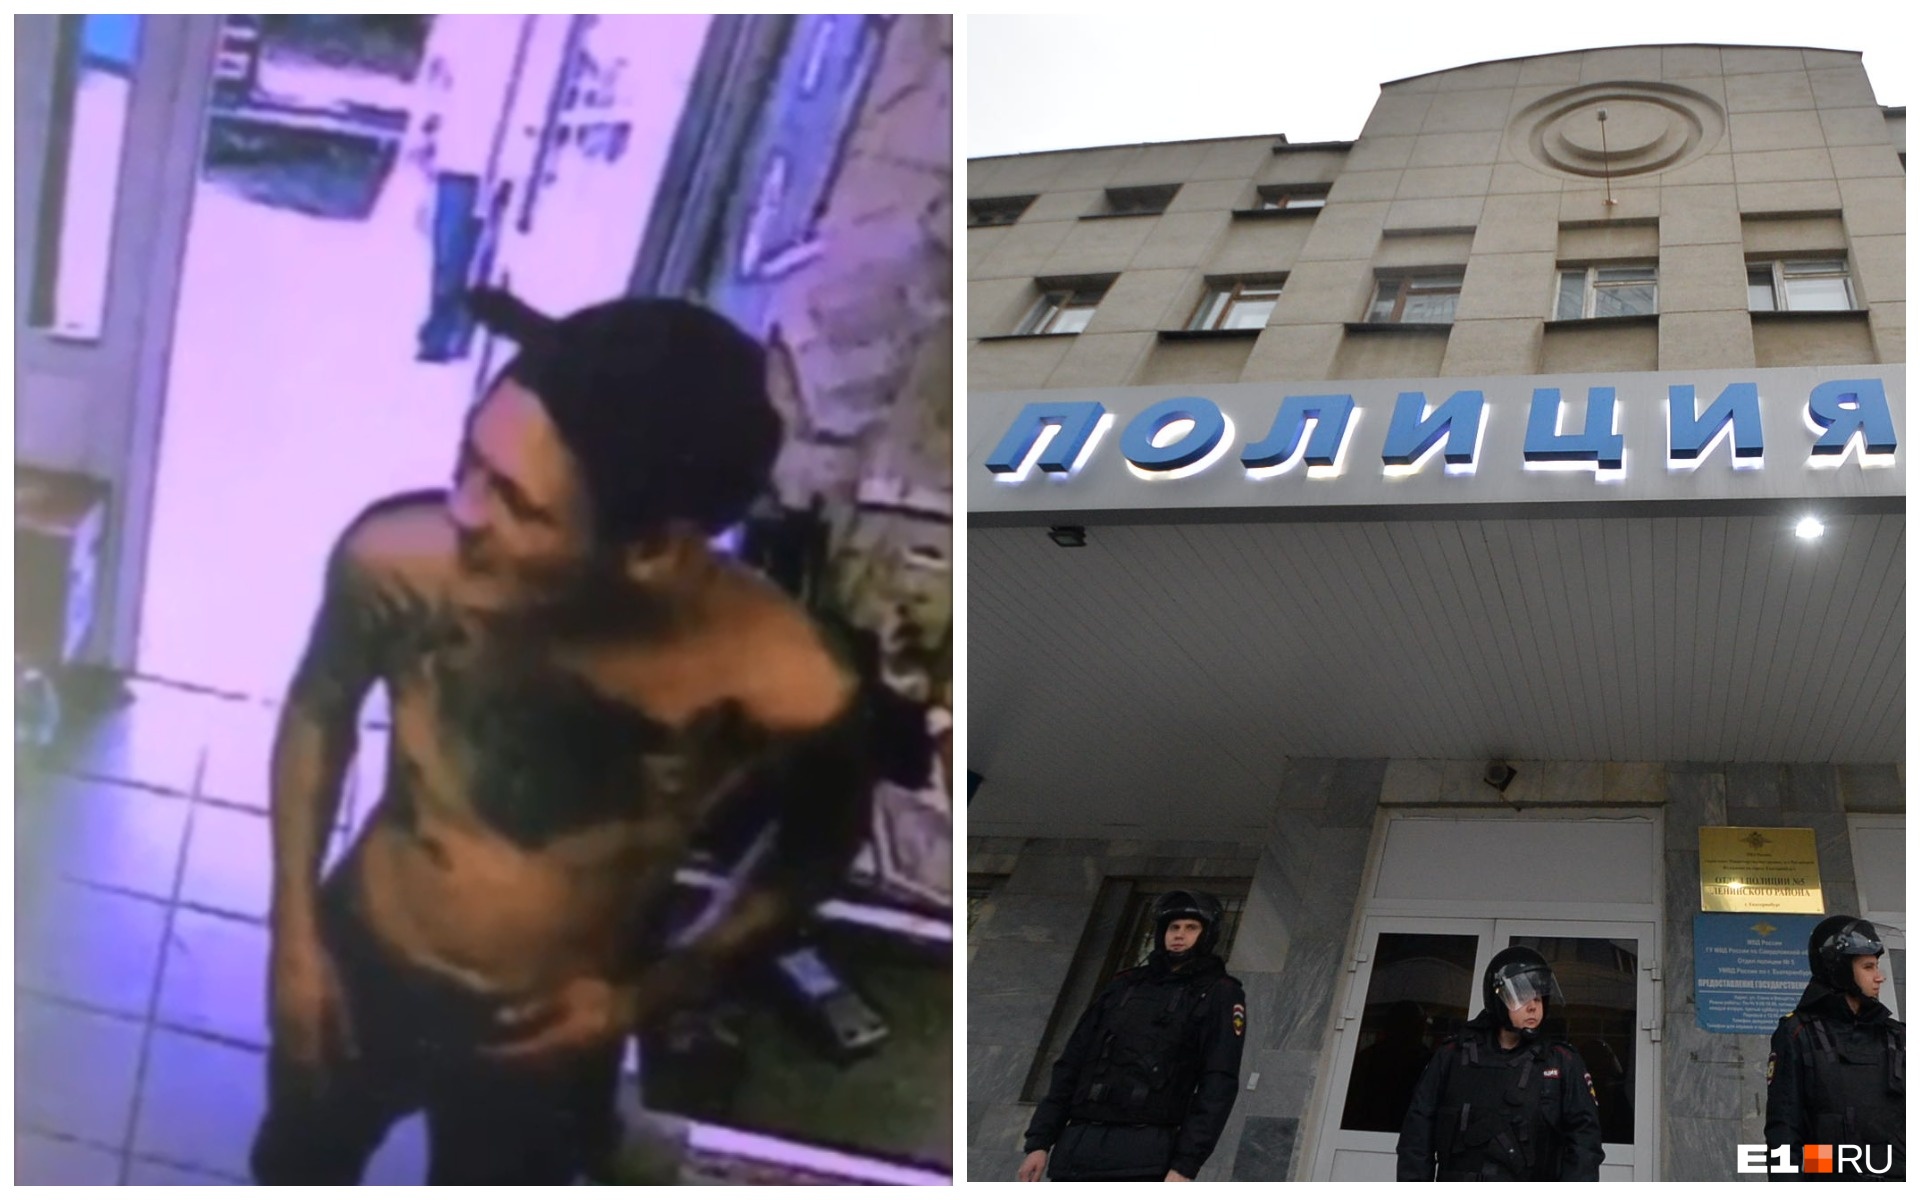 В Екатеринбурге татуированный мужчина украл мотоцикл и попал на камеры. Его разыскивает полиция